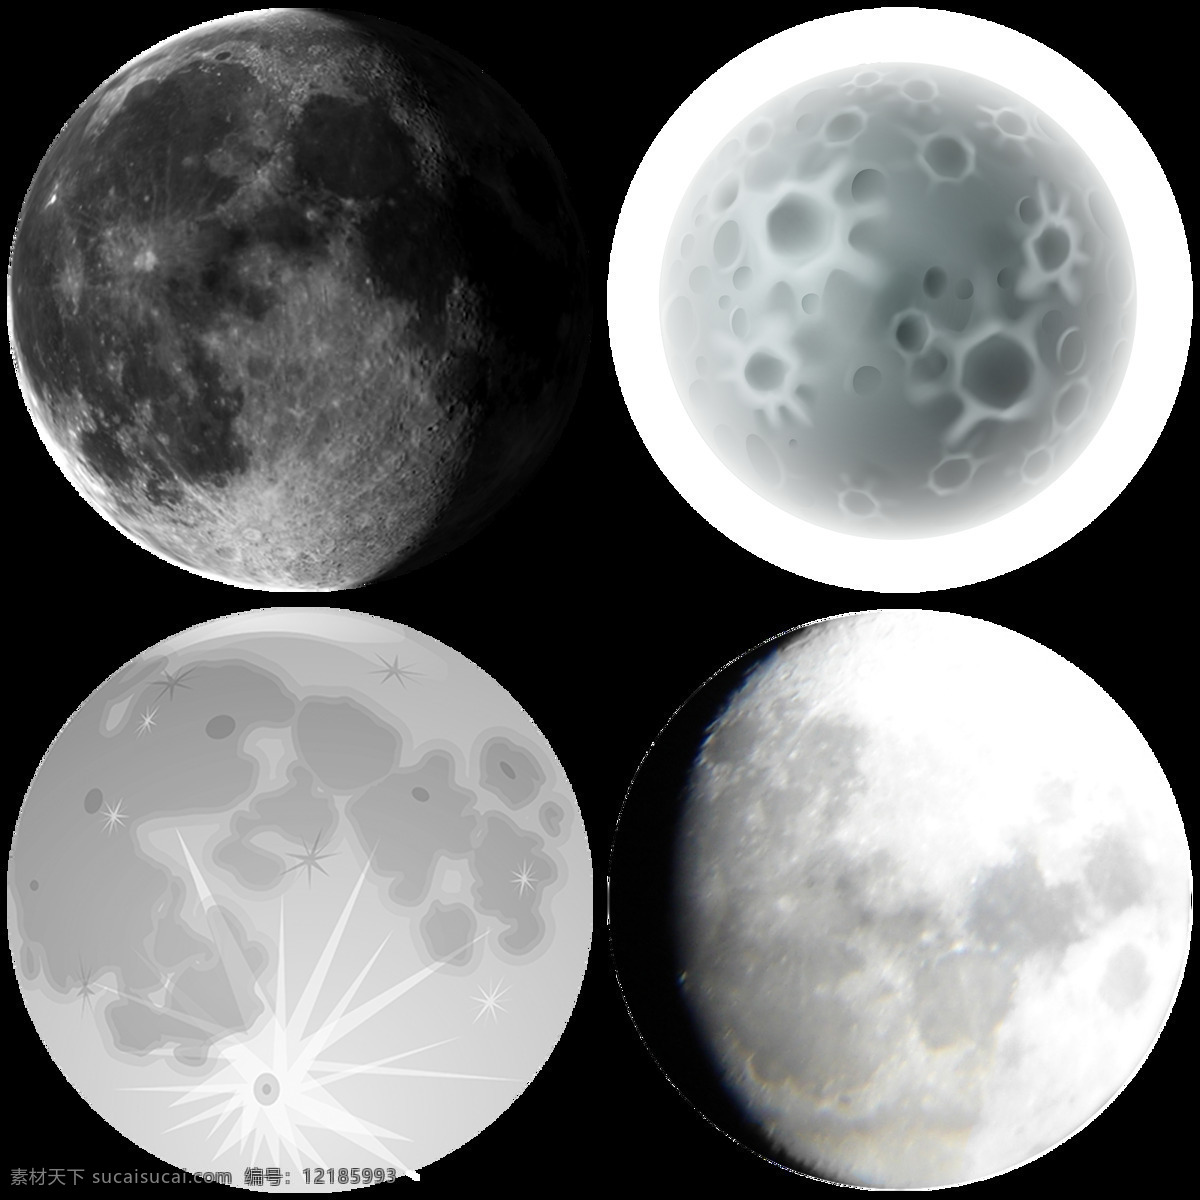 圆形 各种 形态 月球 免 抠 透明 图 层 月亮图片大全 唯美月亮 卡通画 月亮 月亮图片 月亮简笔画 月亮背景图片 月球照片 月球图片 月亮设计素材 月球设计素材